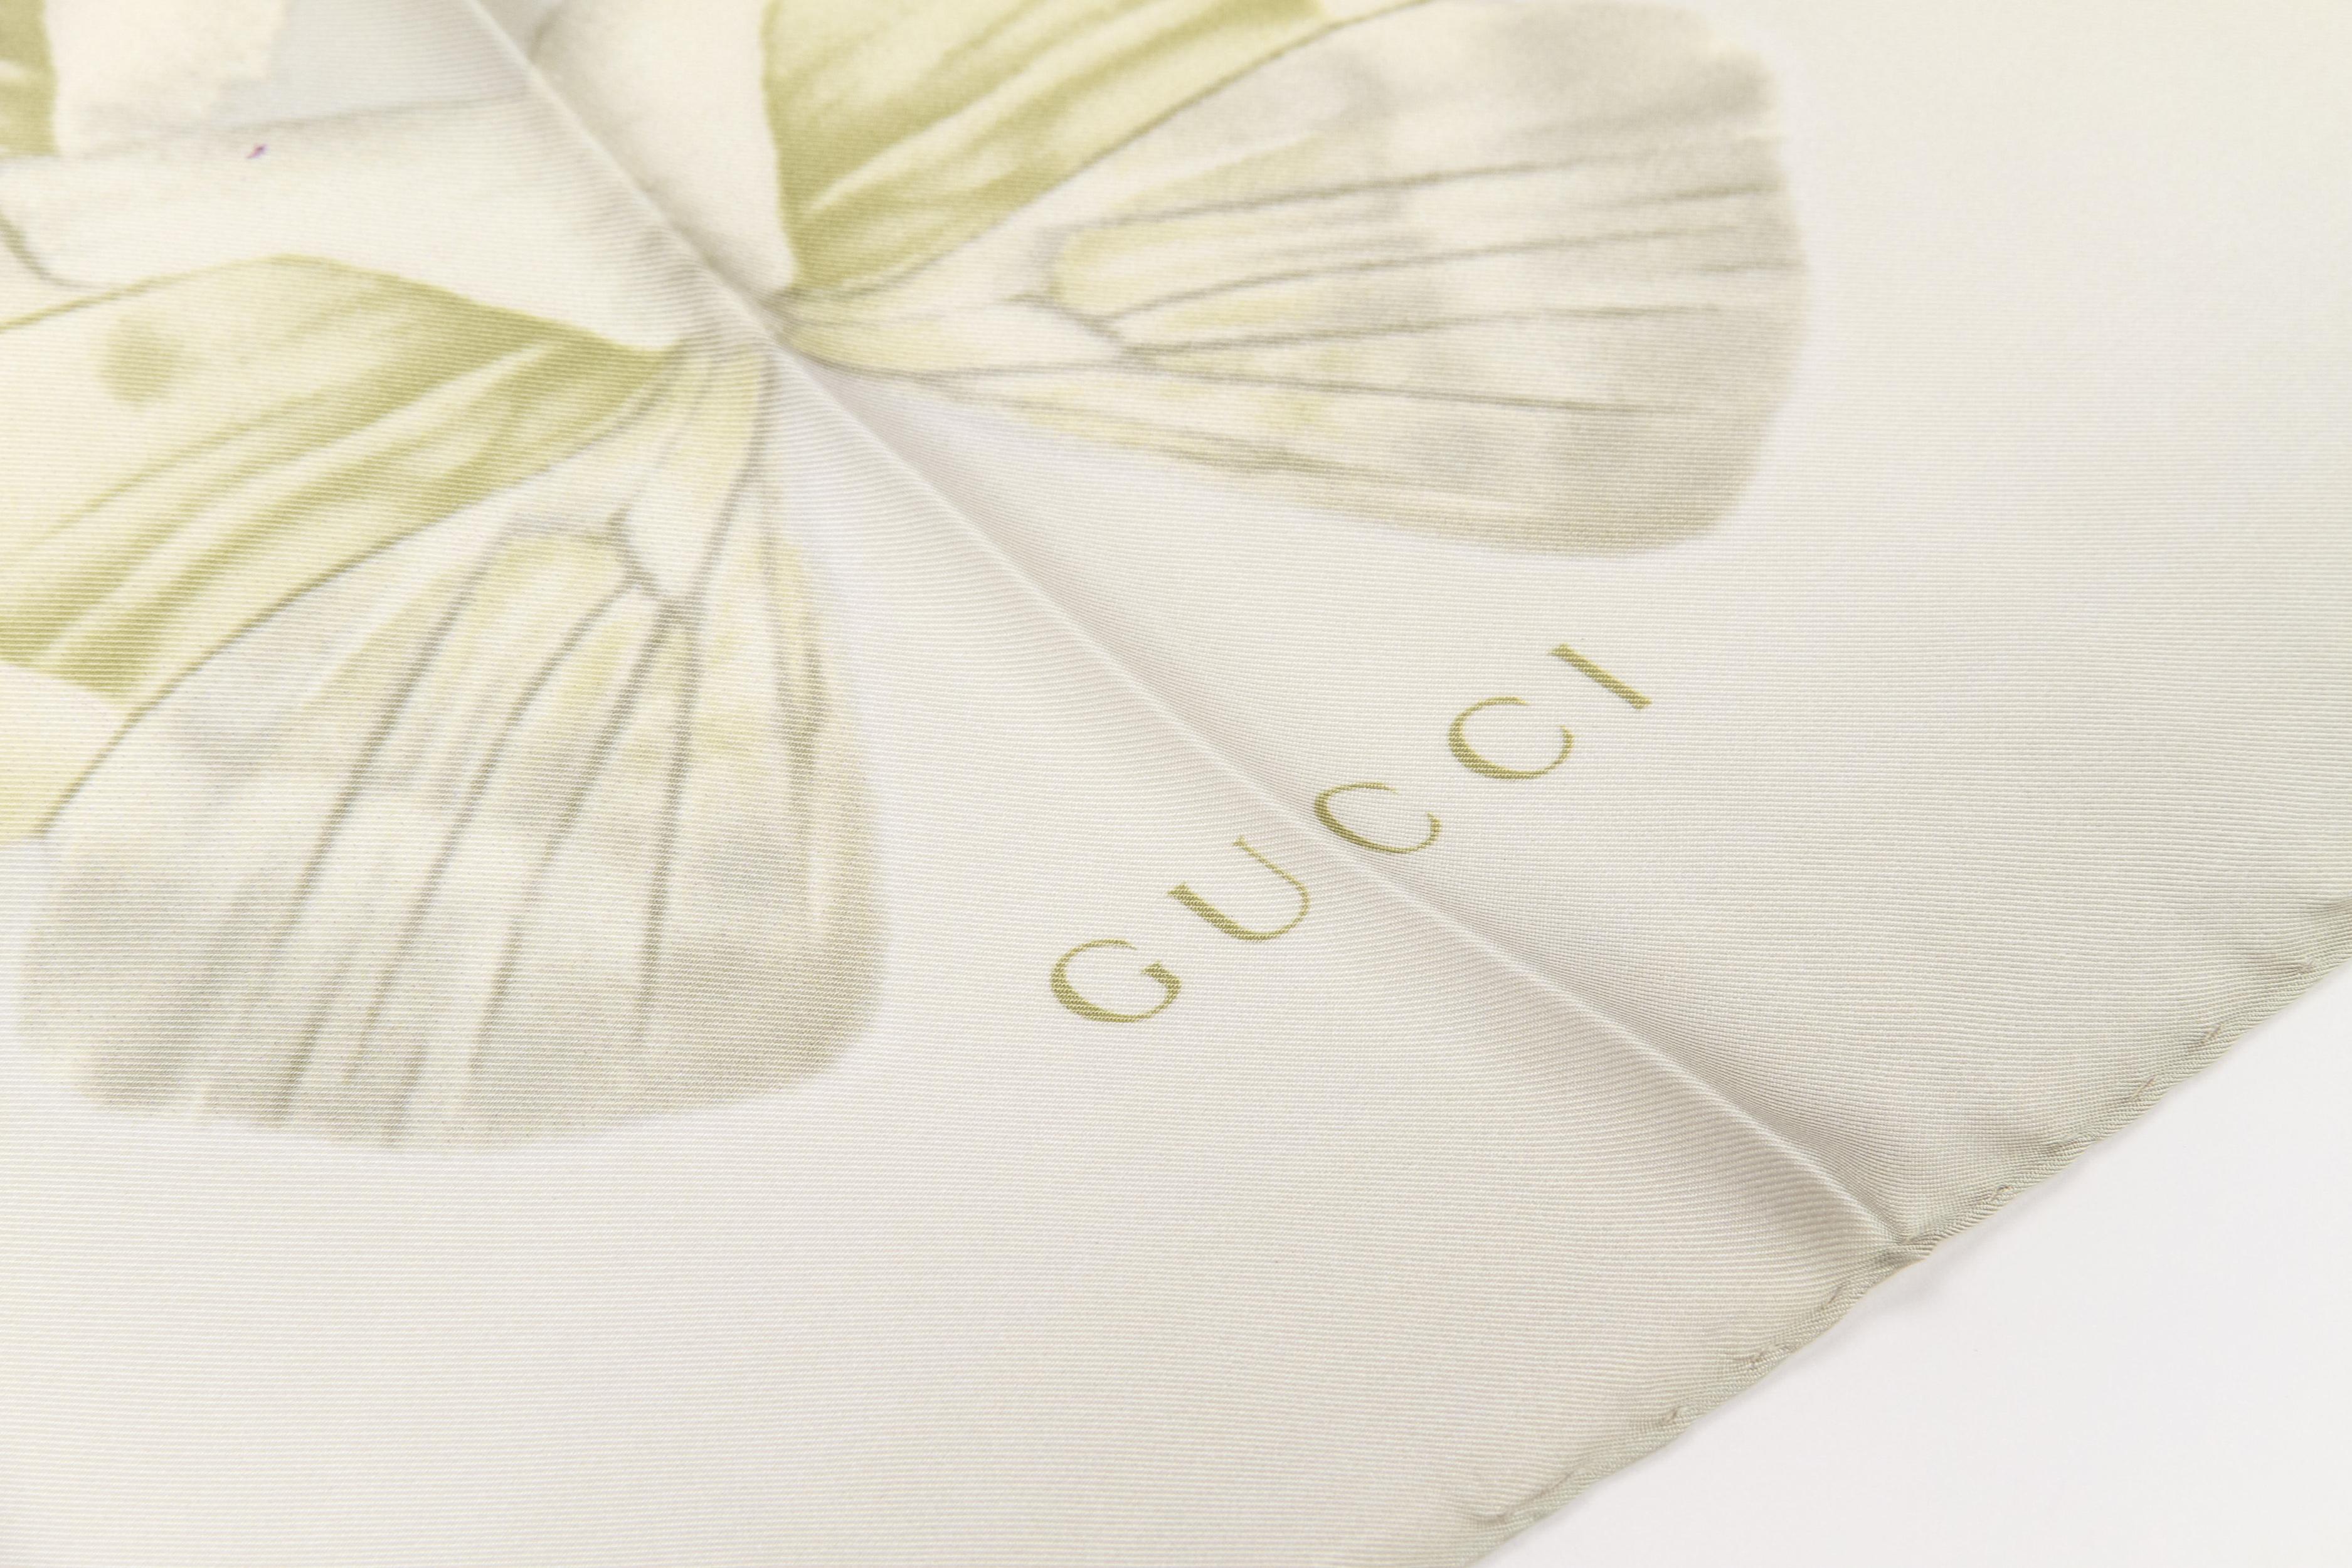 New Gucci Green Butterflies 100% Silk Scarf 
35